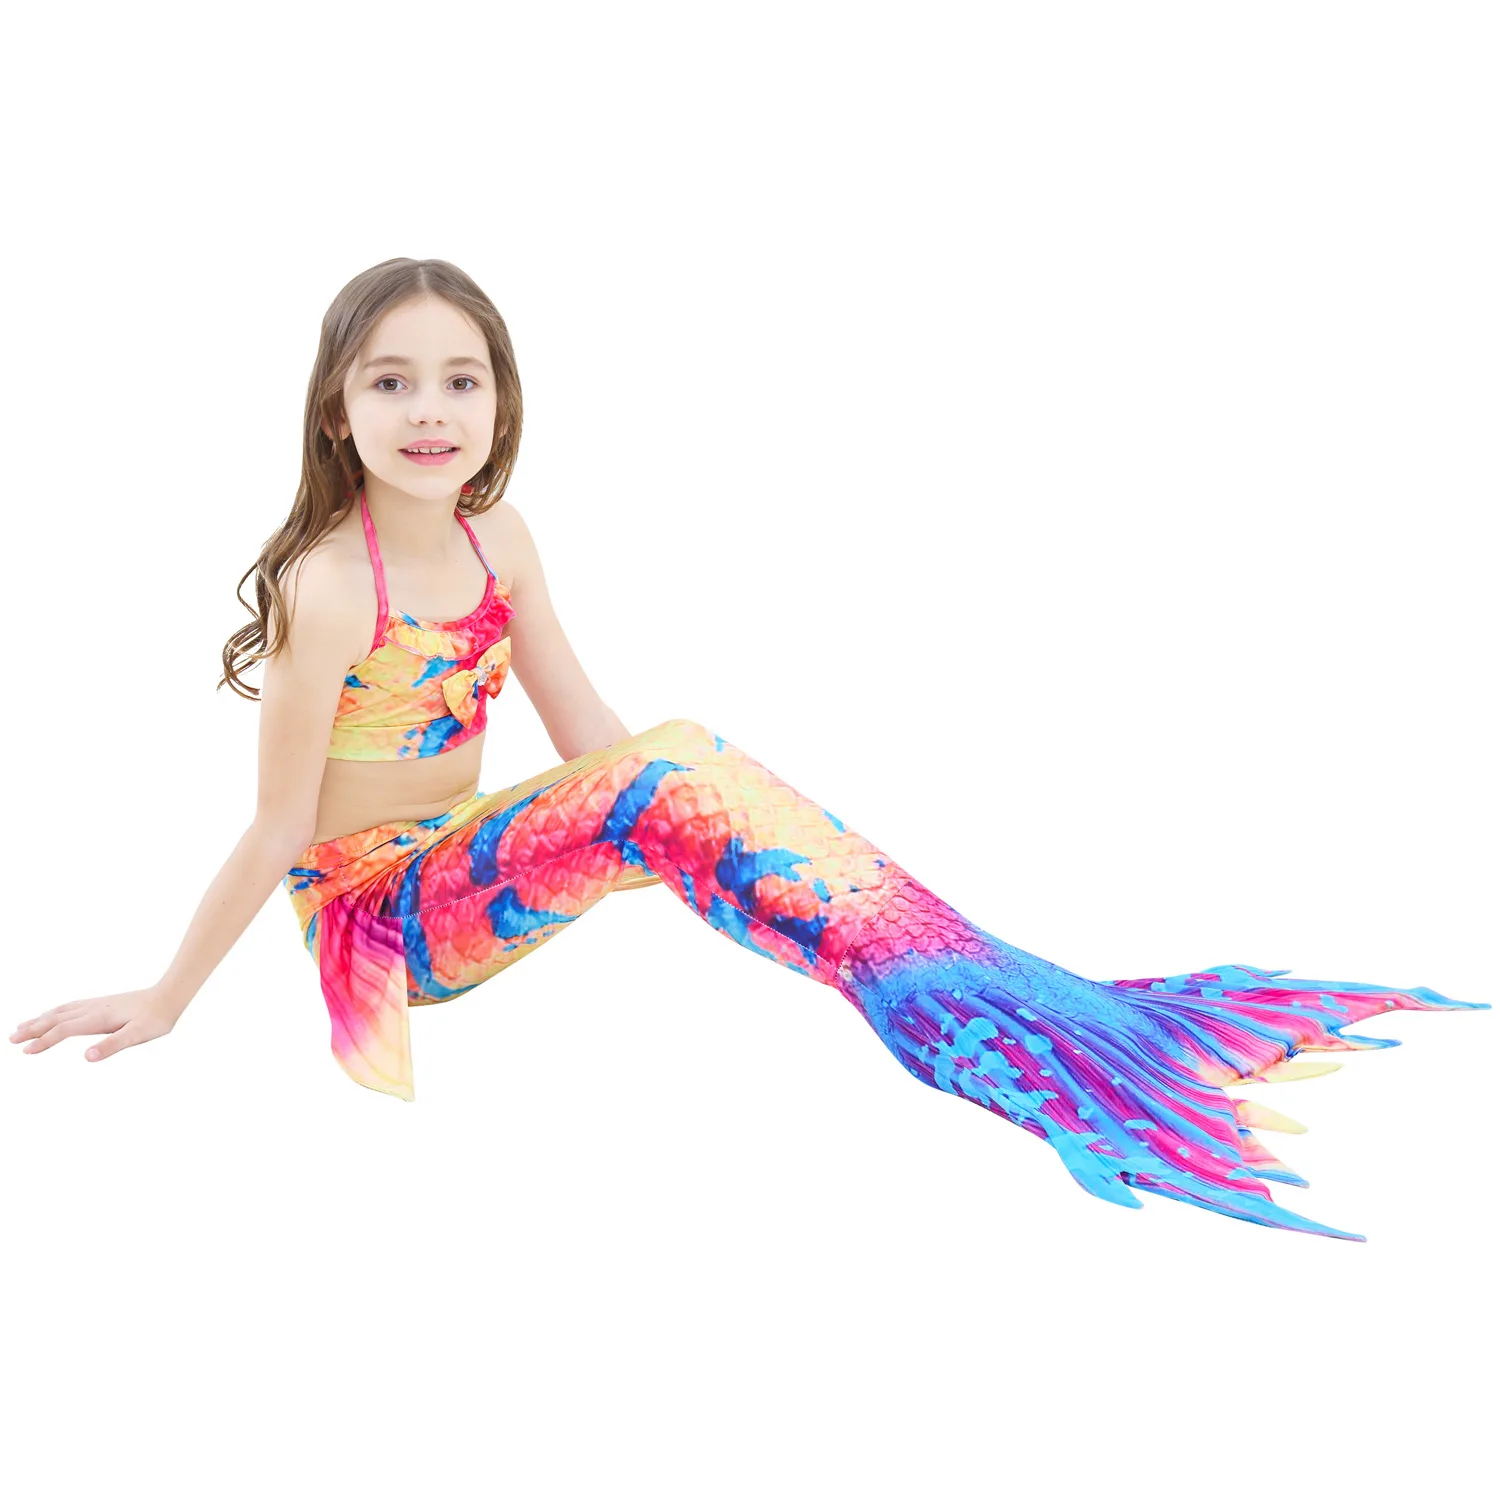 Детский купальный костюм русалки, купальный костюм русалки, платье русалки, купальный костюм, бикини